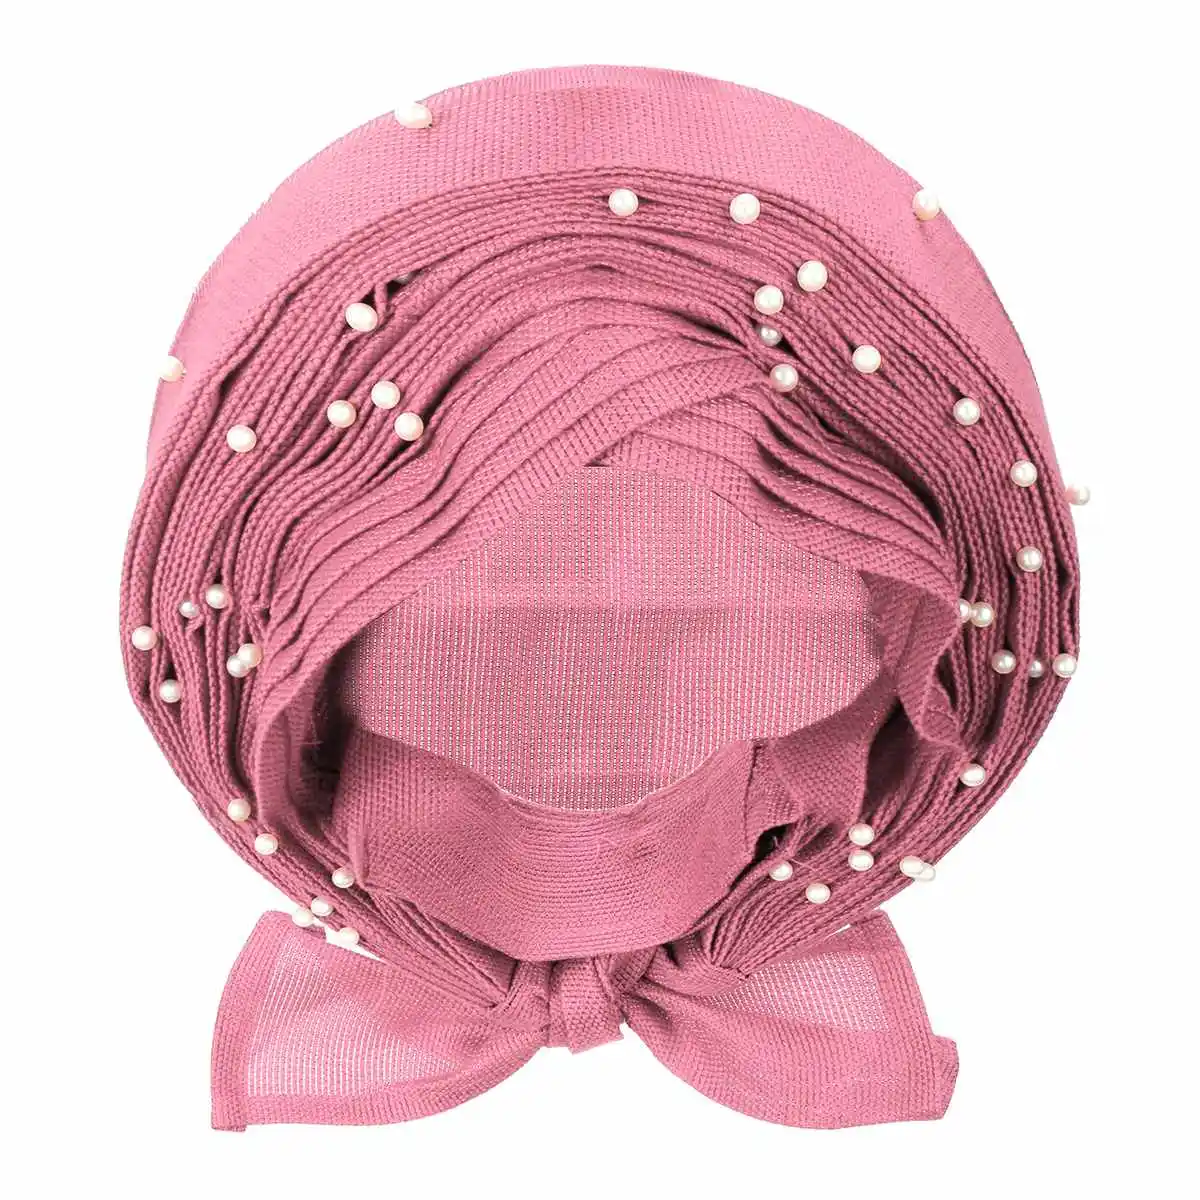 10 цветов Африканский головной платок уже heatie ASO OKE повязка на голову с бисером Африканский тюрбан для женщин аксессуары для волос головной убор ткань - Цвет: pink